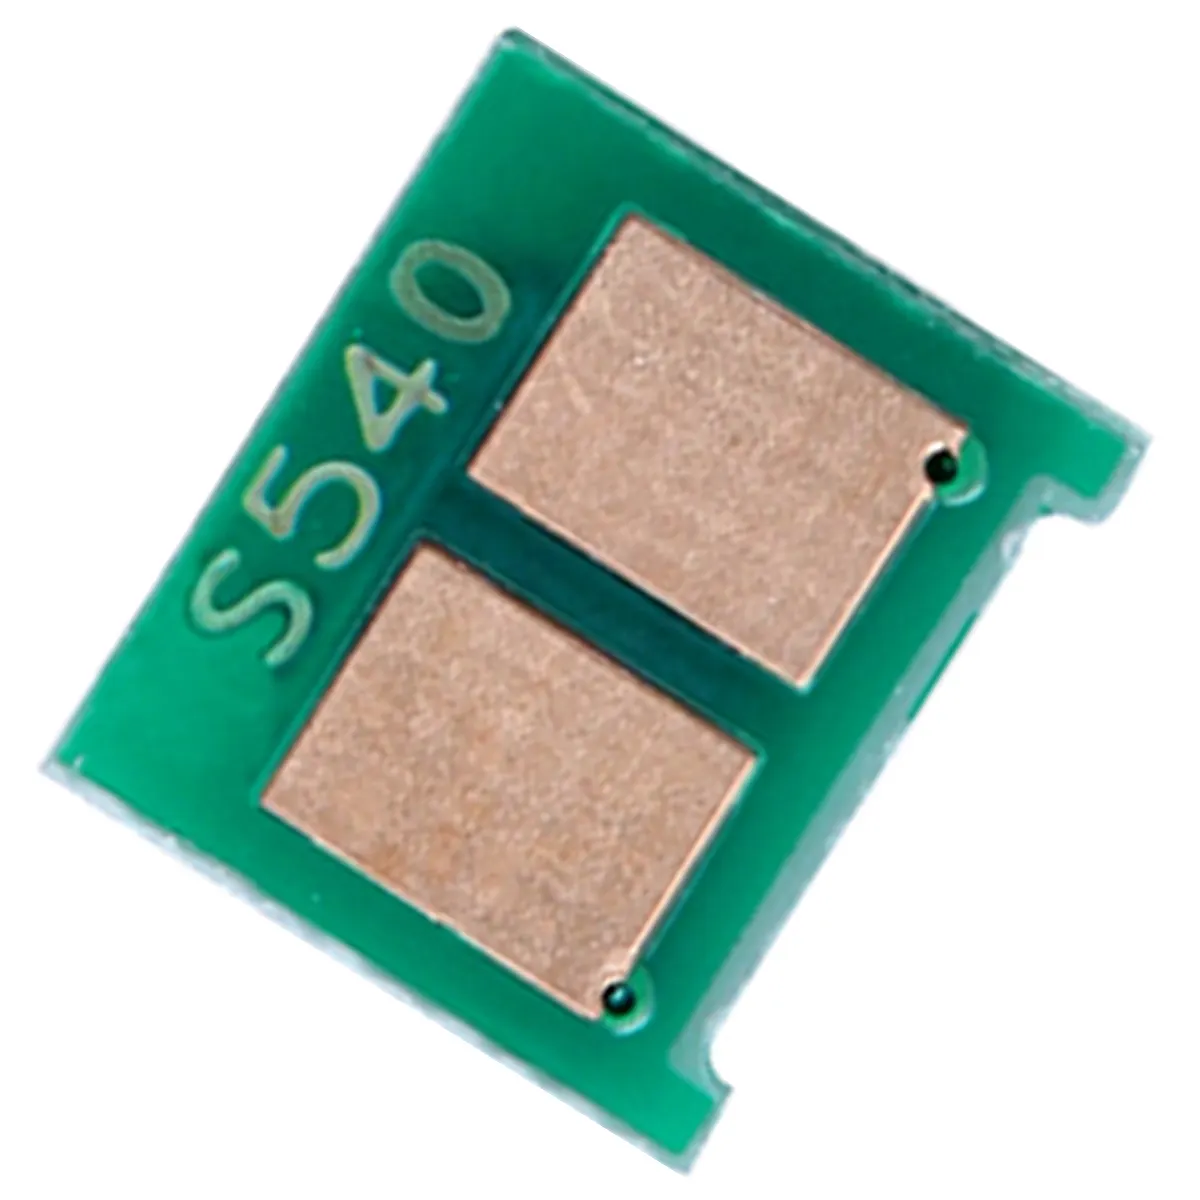 Chip für HP Laser Jet Pro 200 Color M251/MFP M276n/MFP M276nw Laserdrucker kartusche Toner chips zurücksetzen